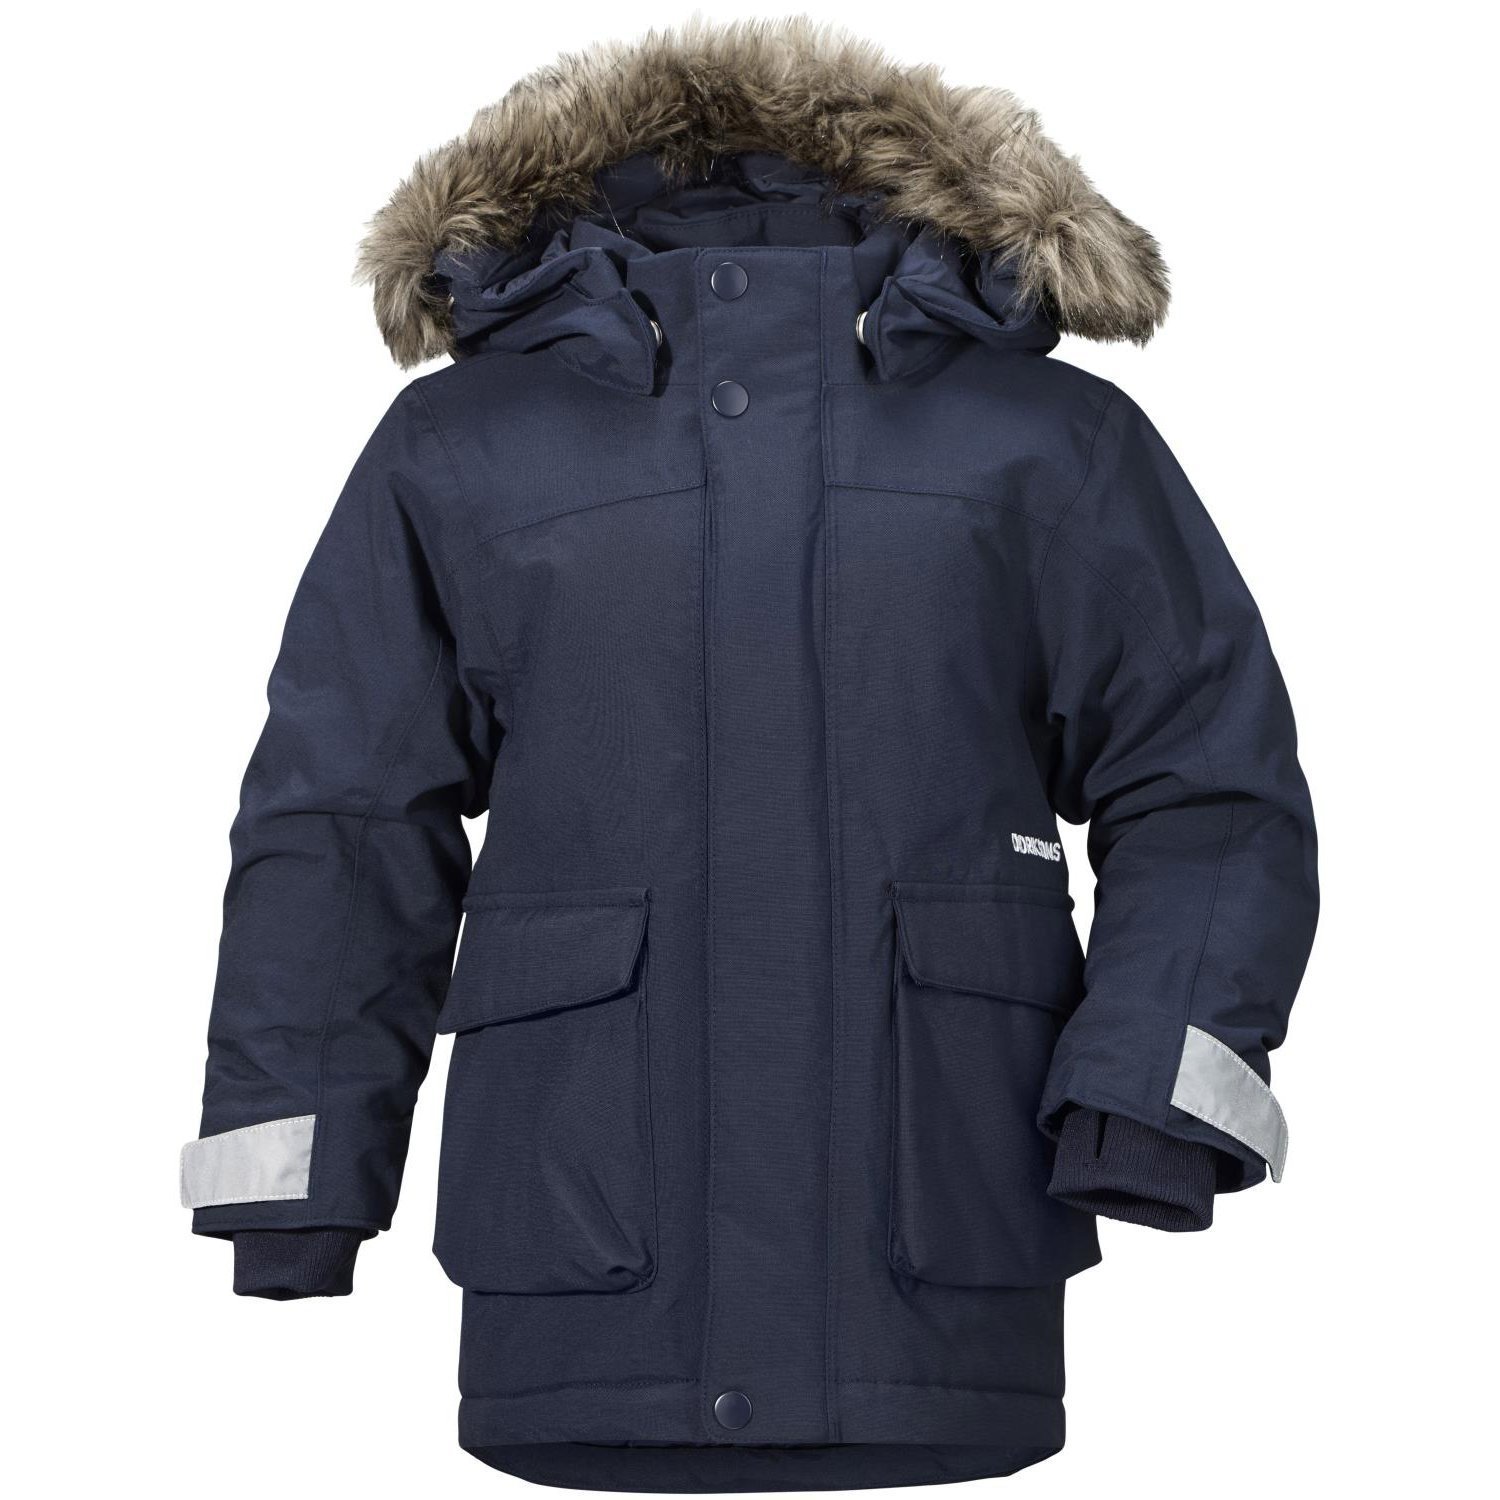 Куртка Kure parka (морской бриз) Didriksons 501848 039 для мальчиков:  купить в Москве куртка зима Didriksons